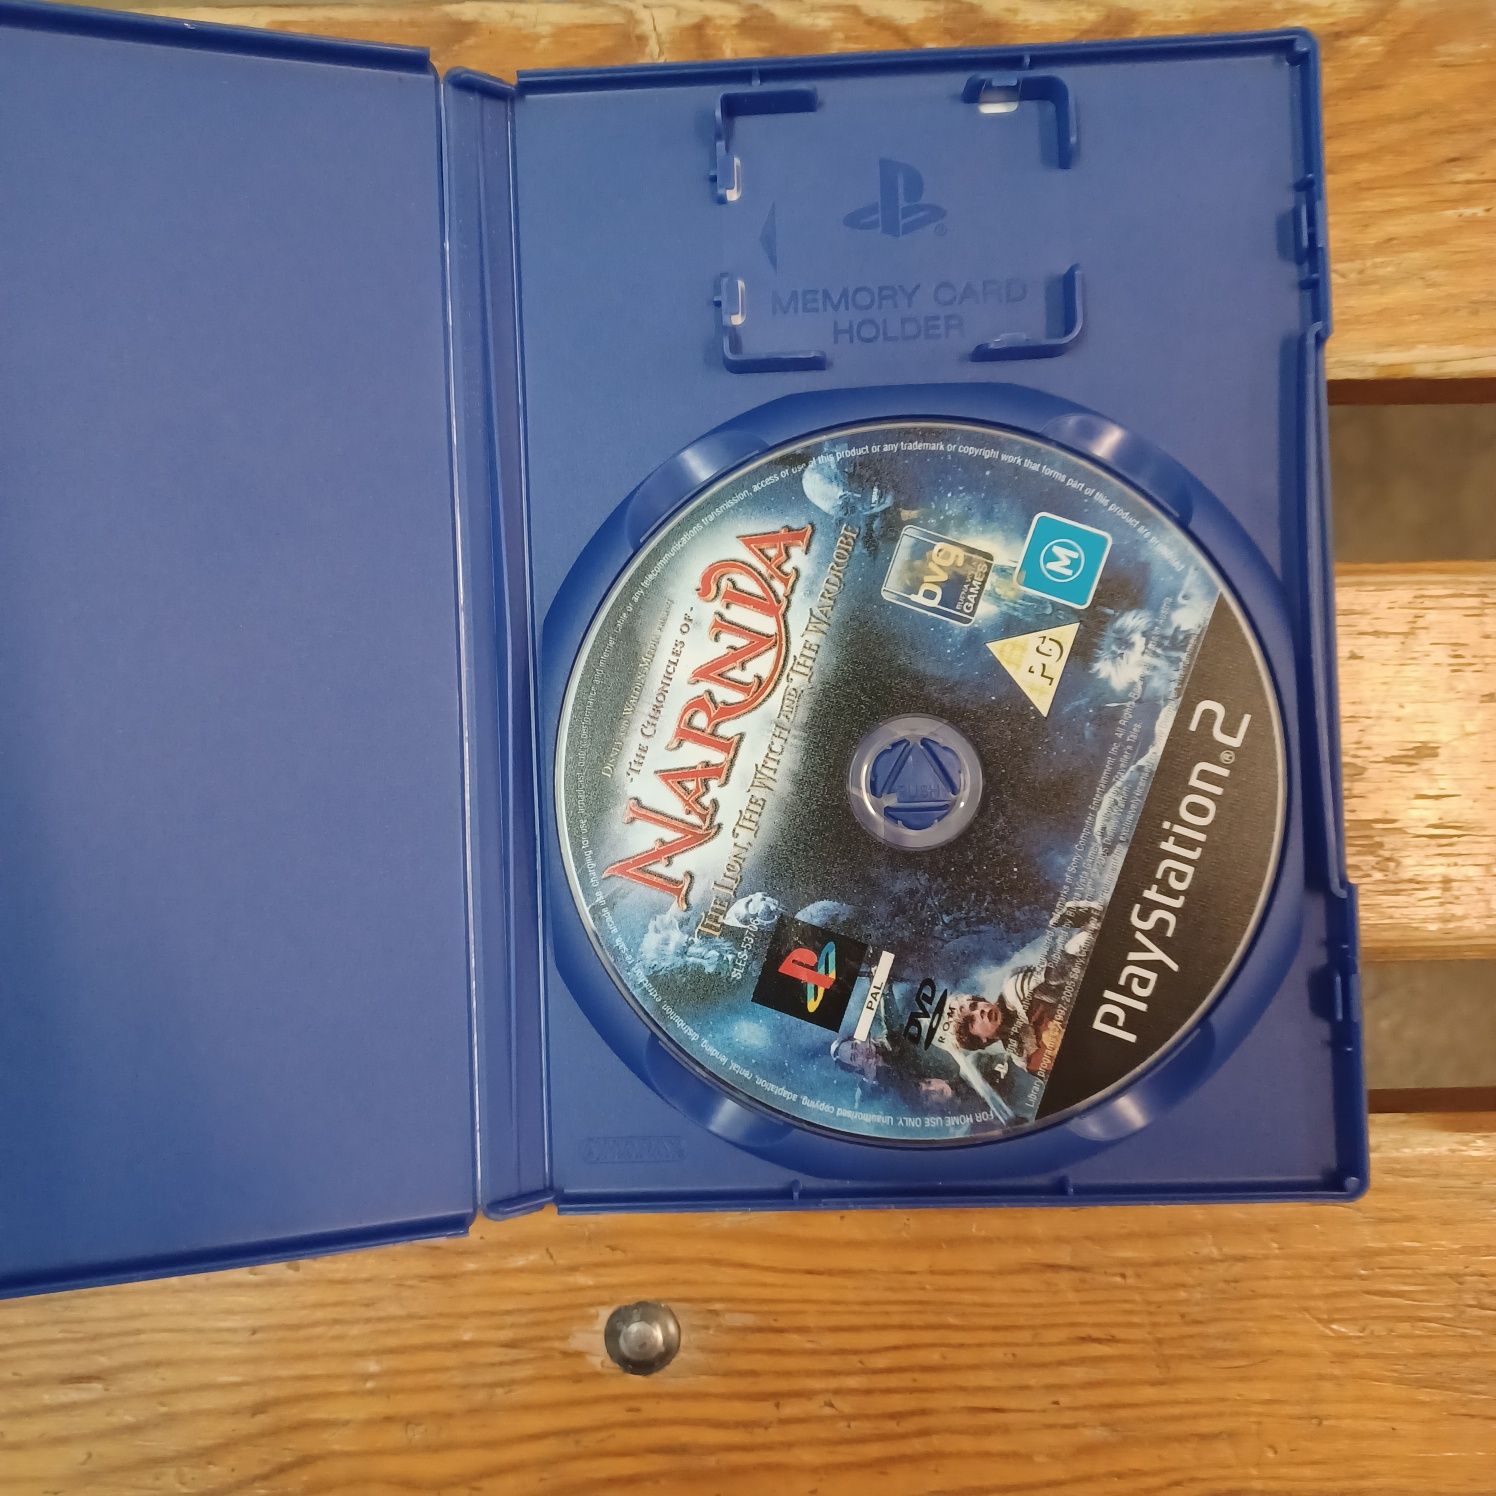 PS2 As Crónicas de Narnia